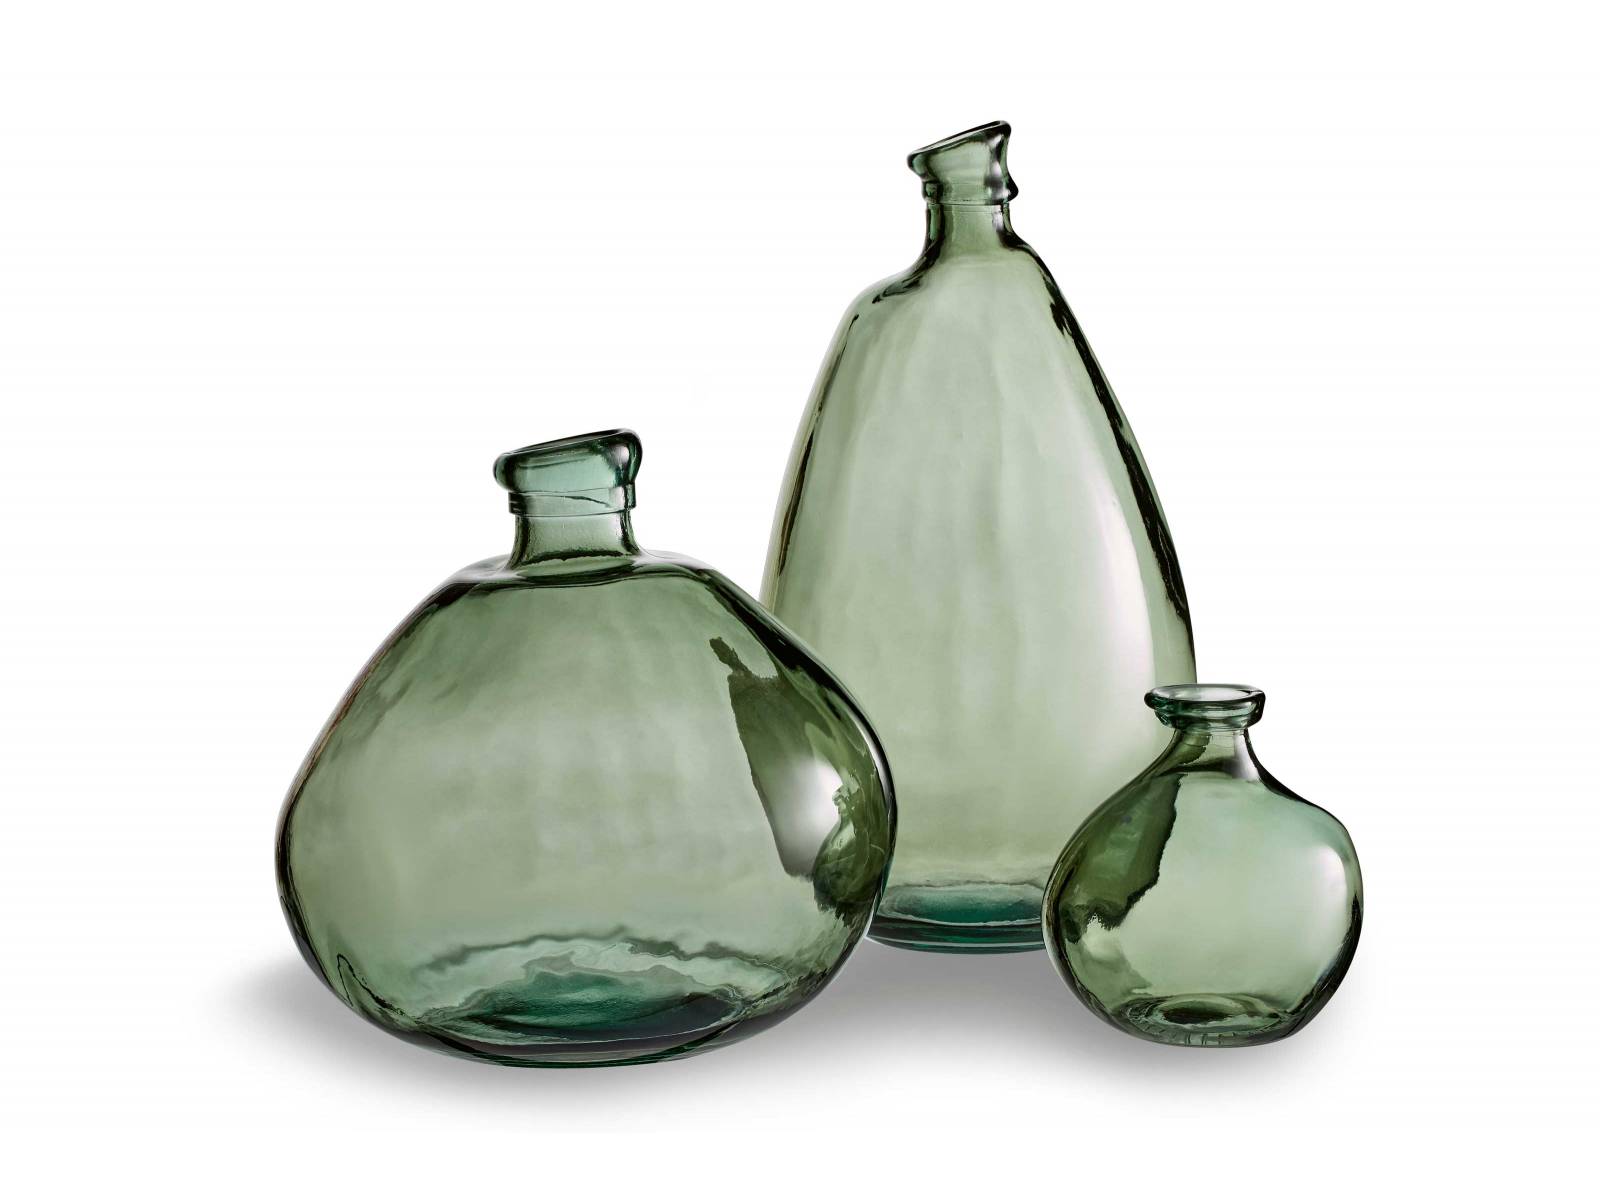 Für einen Fliederzweig aus dem Garten oder einfach zur Dekoration im Outdoorbereich – die Vasen «Caecilia» machen eine gute Figur, besonders wenn sie wie hier als Dreier-Ensemble gezeigt werden. Aus 100% Recyclingglas. MICASA.